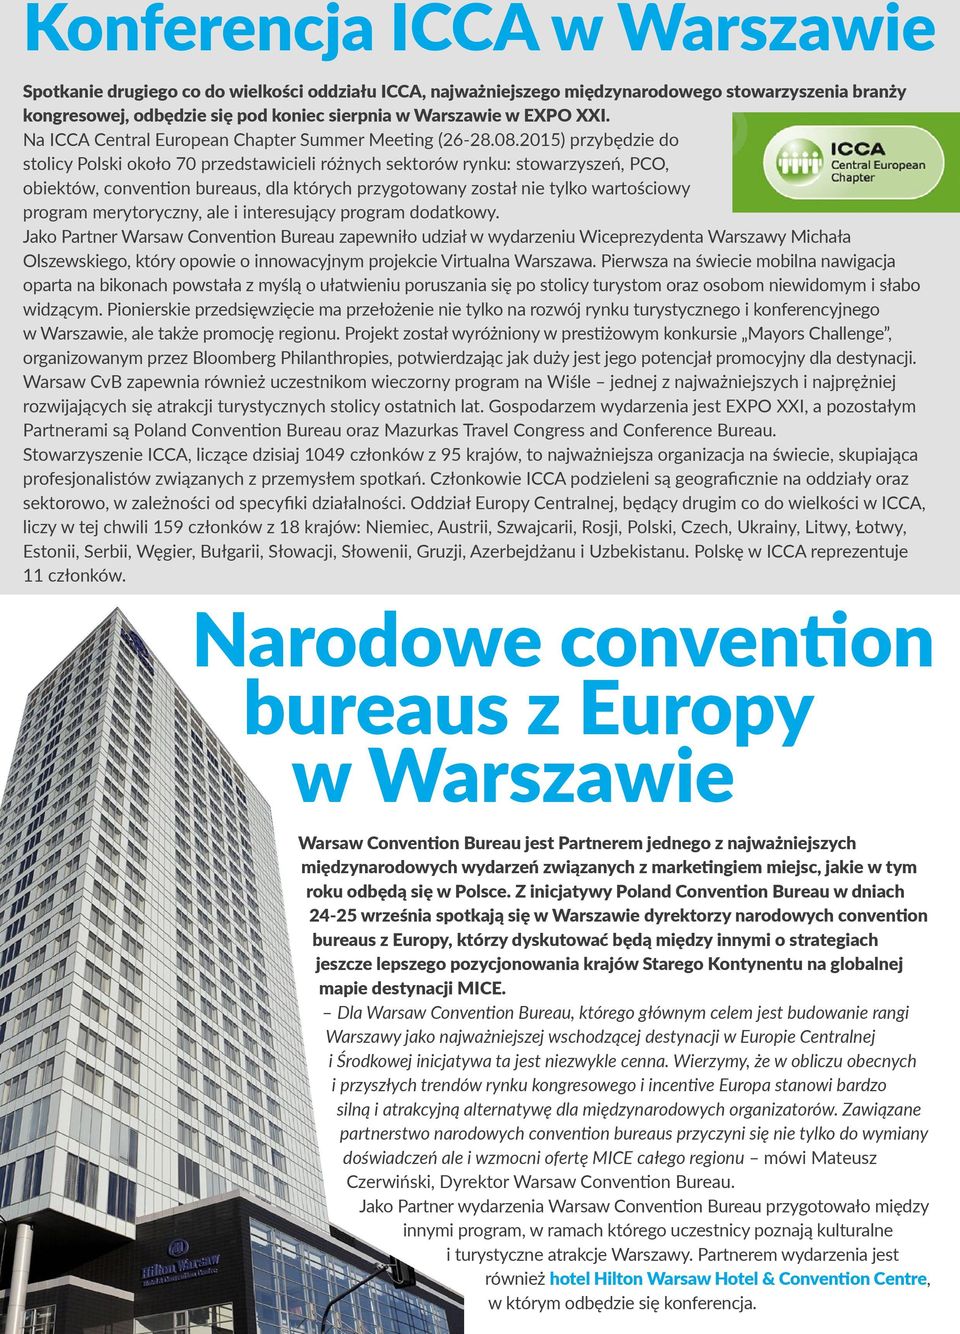 2015) przybędzie do stolicy Polski około 70 przedstawicieli różnych sektorów rynku: stowarzyszeń, PCO, obiektów, convention bureaus, dla których przygotowany został nie tylko wartościowy program